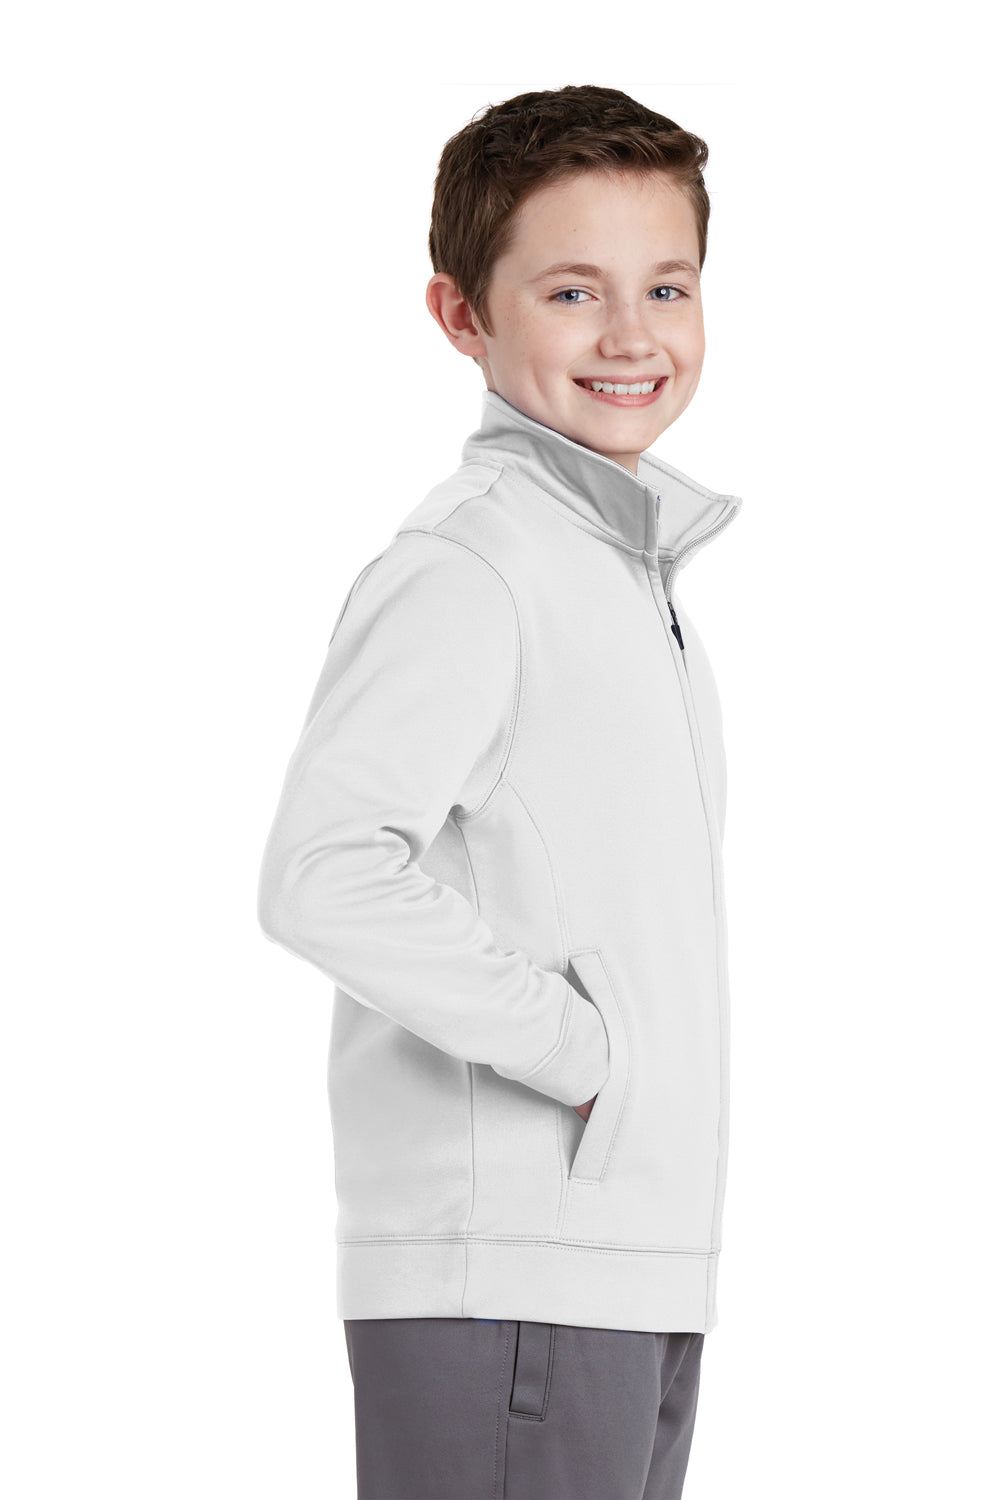 Sport-Tek YST241 Youth Sport-Wick Moisture Wicking Fleece Full Zip Sweatshirt White Side